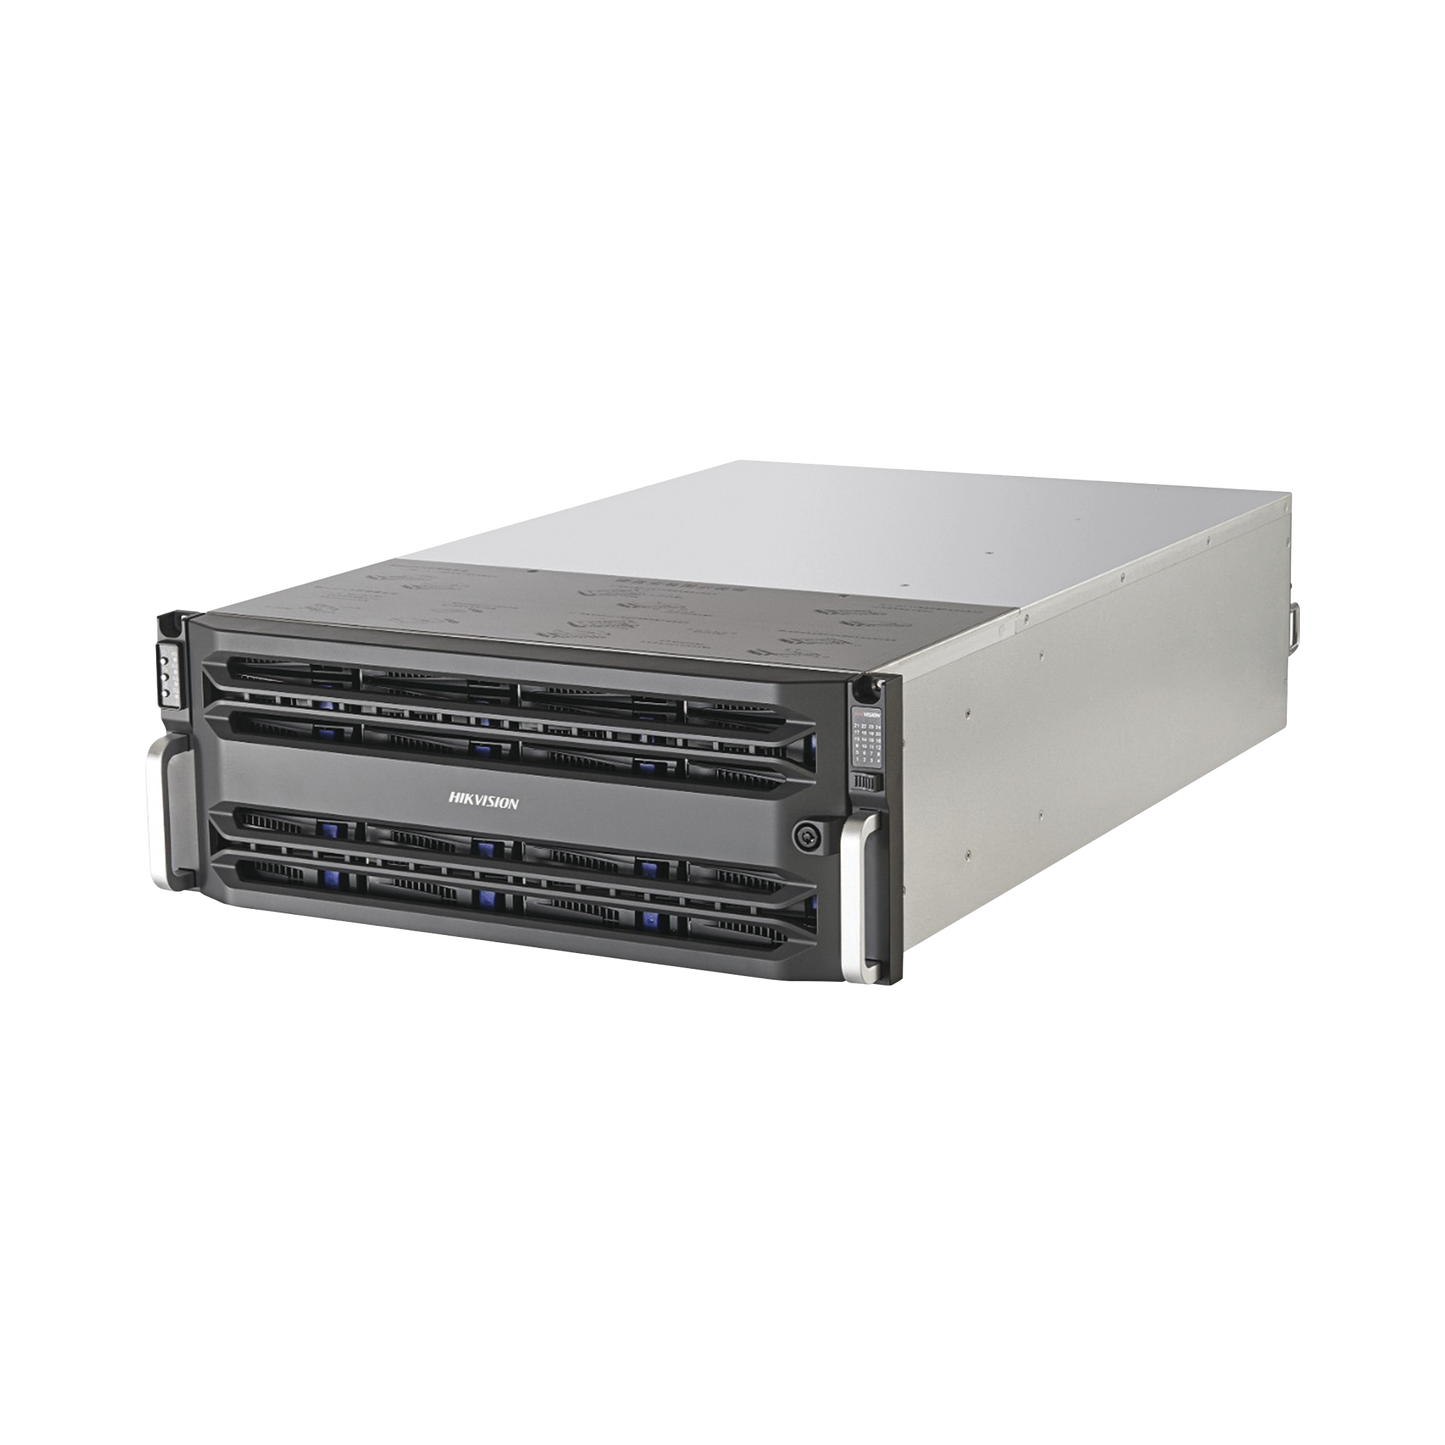 Servidor de Almacenamiento en Red /  Soporta 24 Discos Duros (No incluye Discos Duros) / RAID / Graba 600 canales IP / Doble procesador